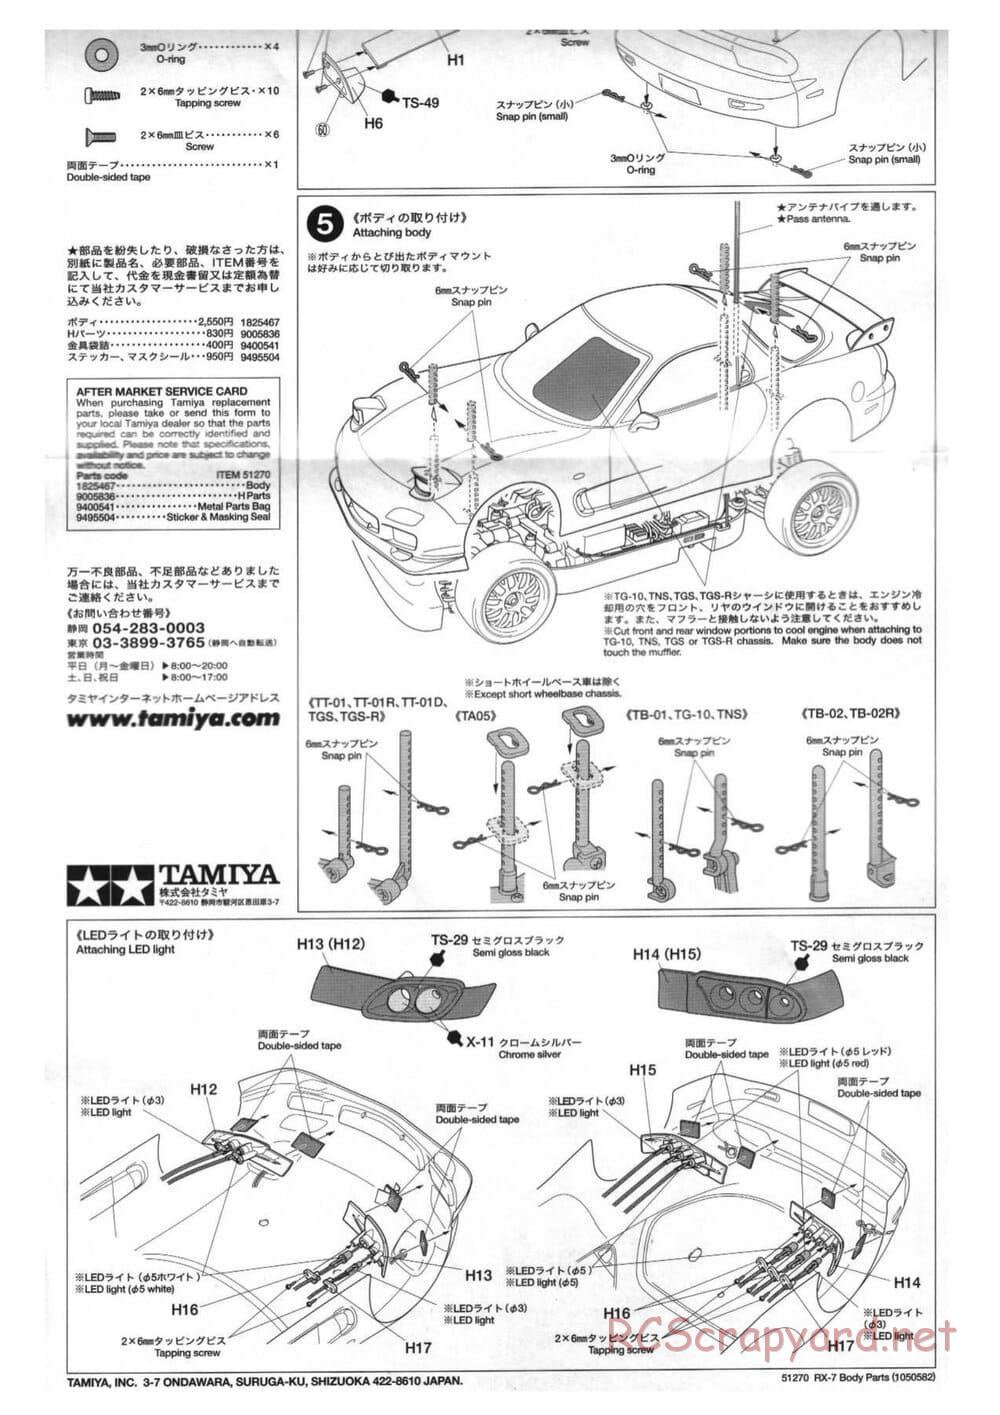 Tamiya - Mazda RX-7 - TT-01 Chassis - Body Manual - Page 4